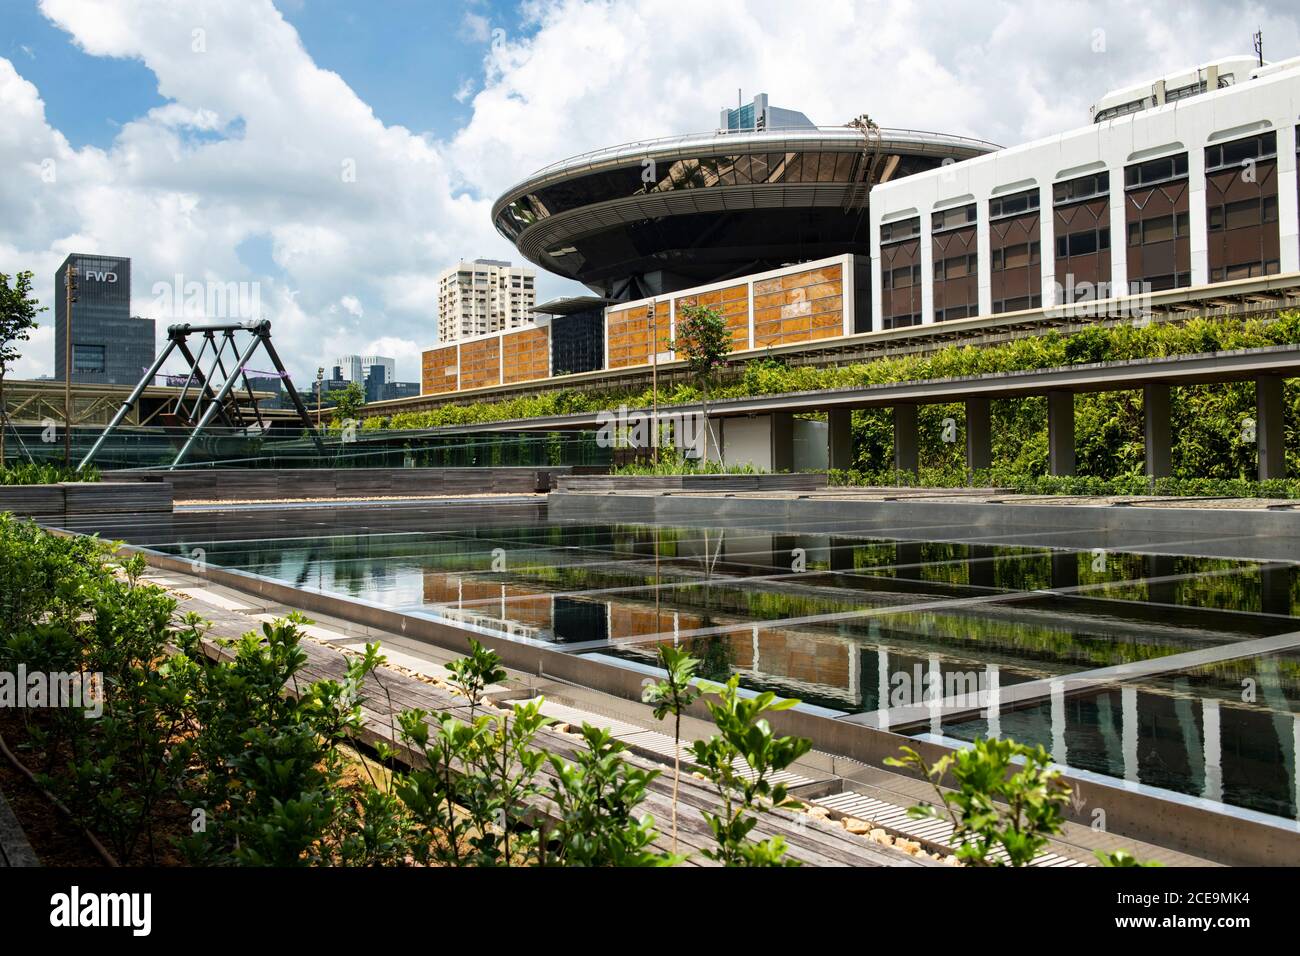 Singapur, Singapur: 07. März 2020. National Gallery Singapur Öffentliche Dachterrasse mit Blick auf die Singapore Academy of Law. Das Gebiet wird als t bezeichnet Stockfoto